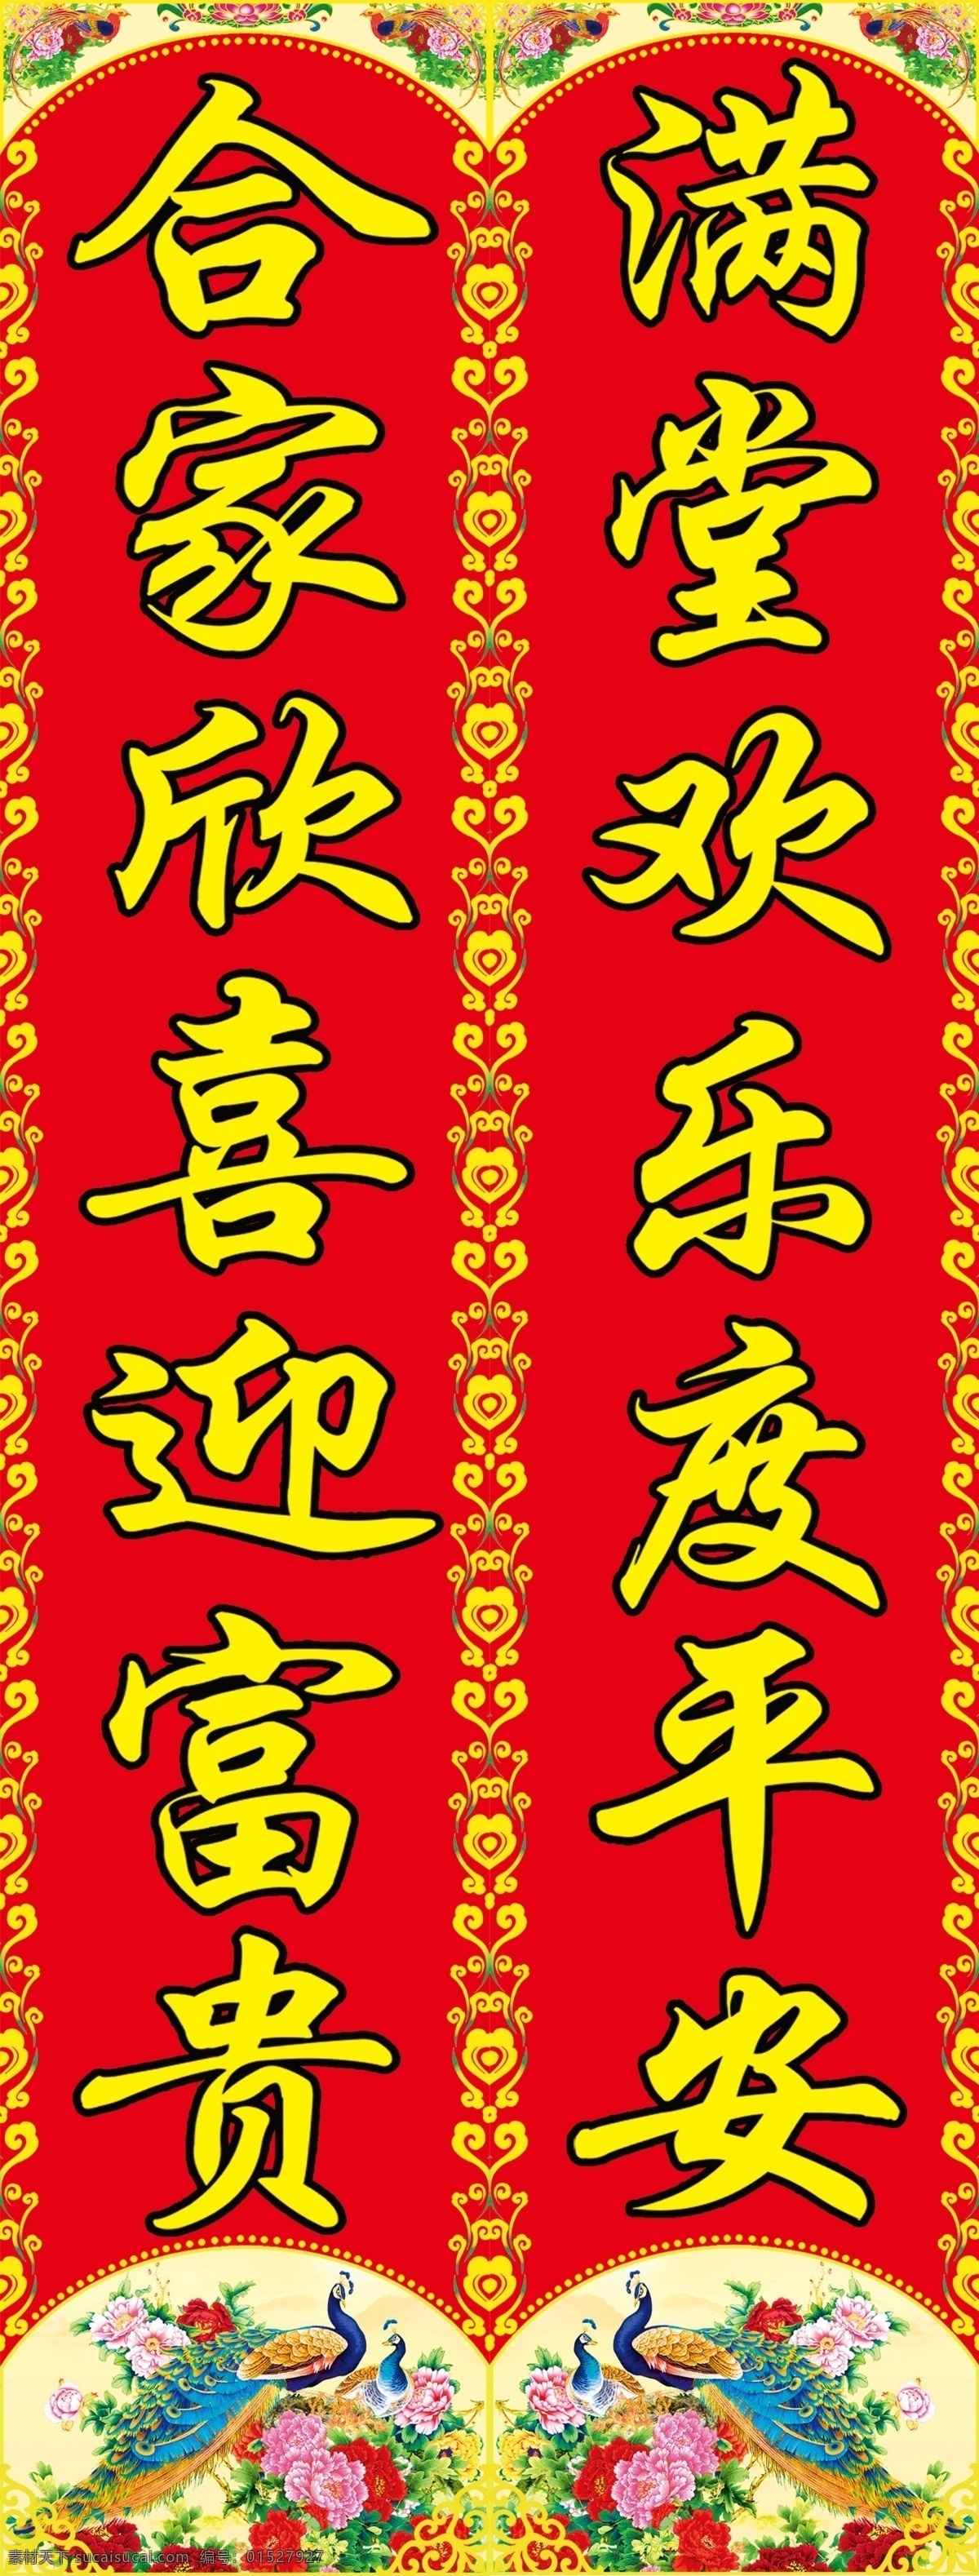 孔雀对联 对联 福字 花纹 过年 幸福 年画 红色 孔雀 年货 喜庆 挥春 利是钱 传统文化 年文化 家文化 文化艺术